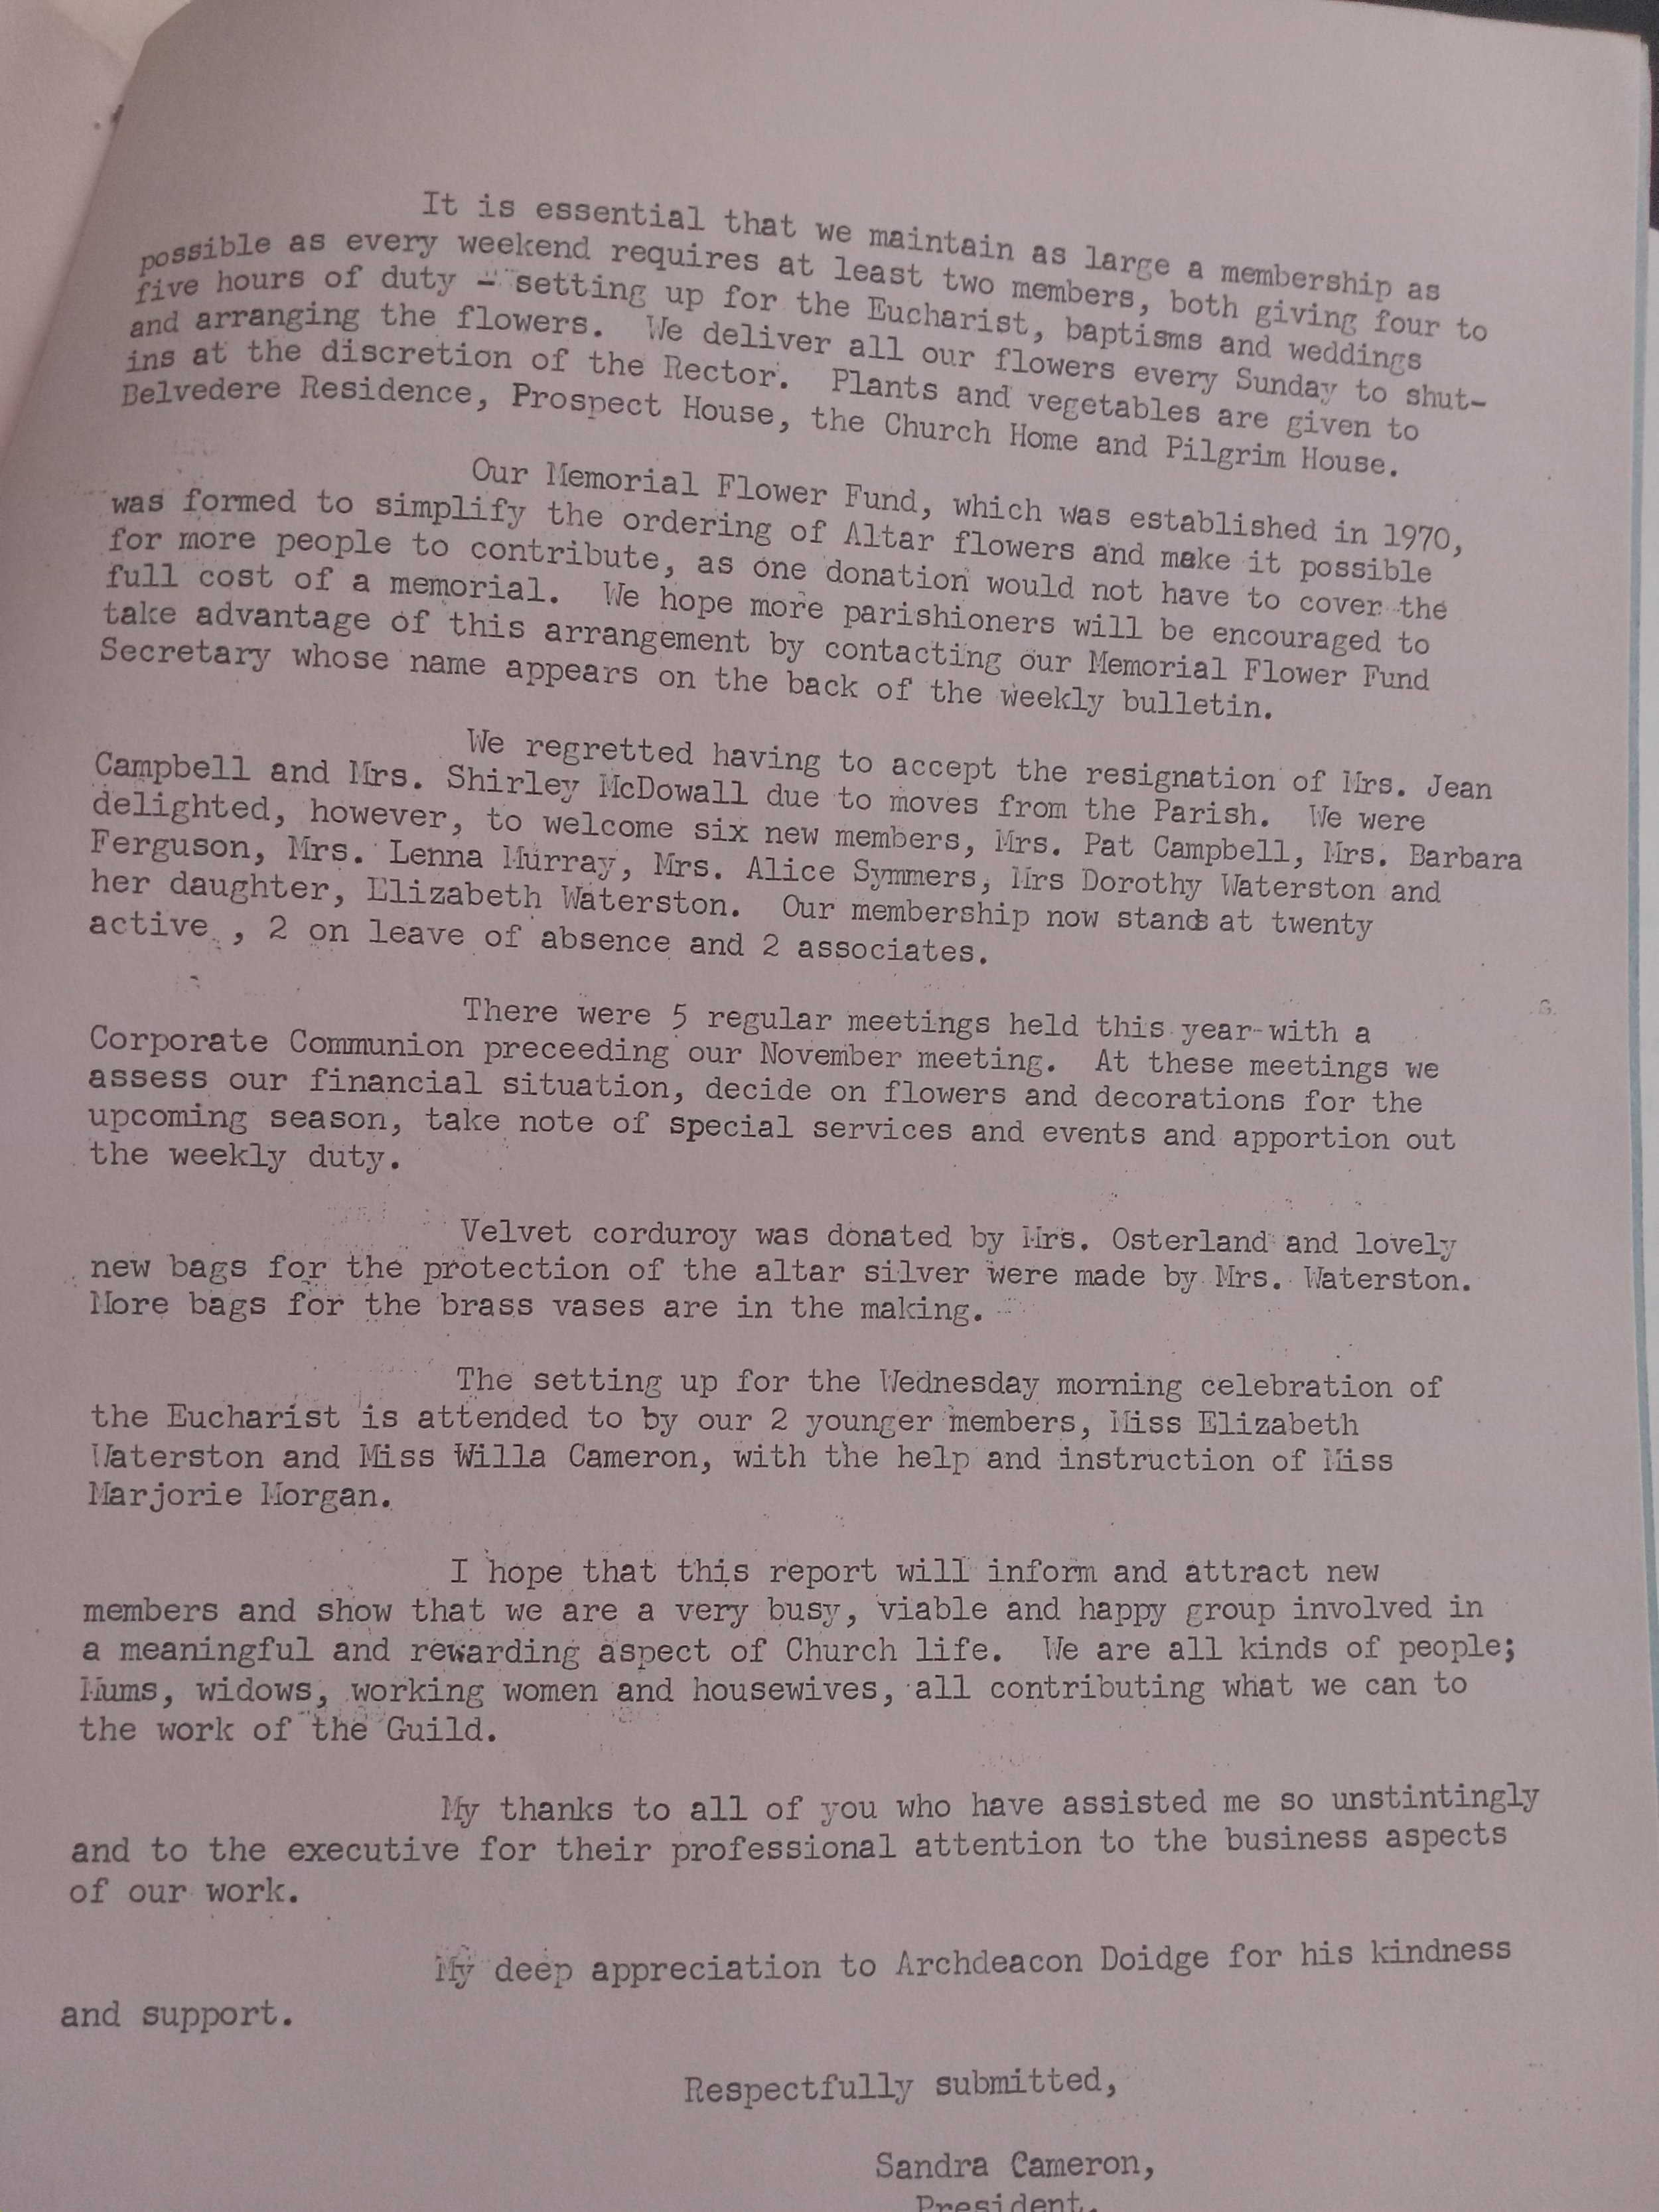 1979 Chancel Guild Report 2.jpg